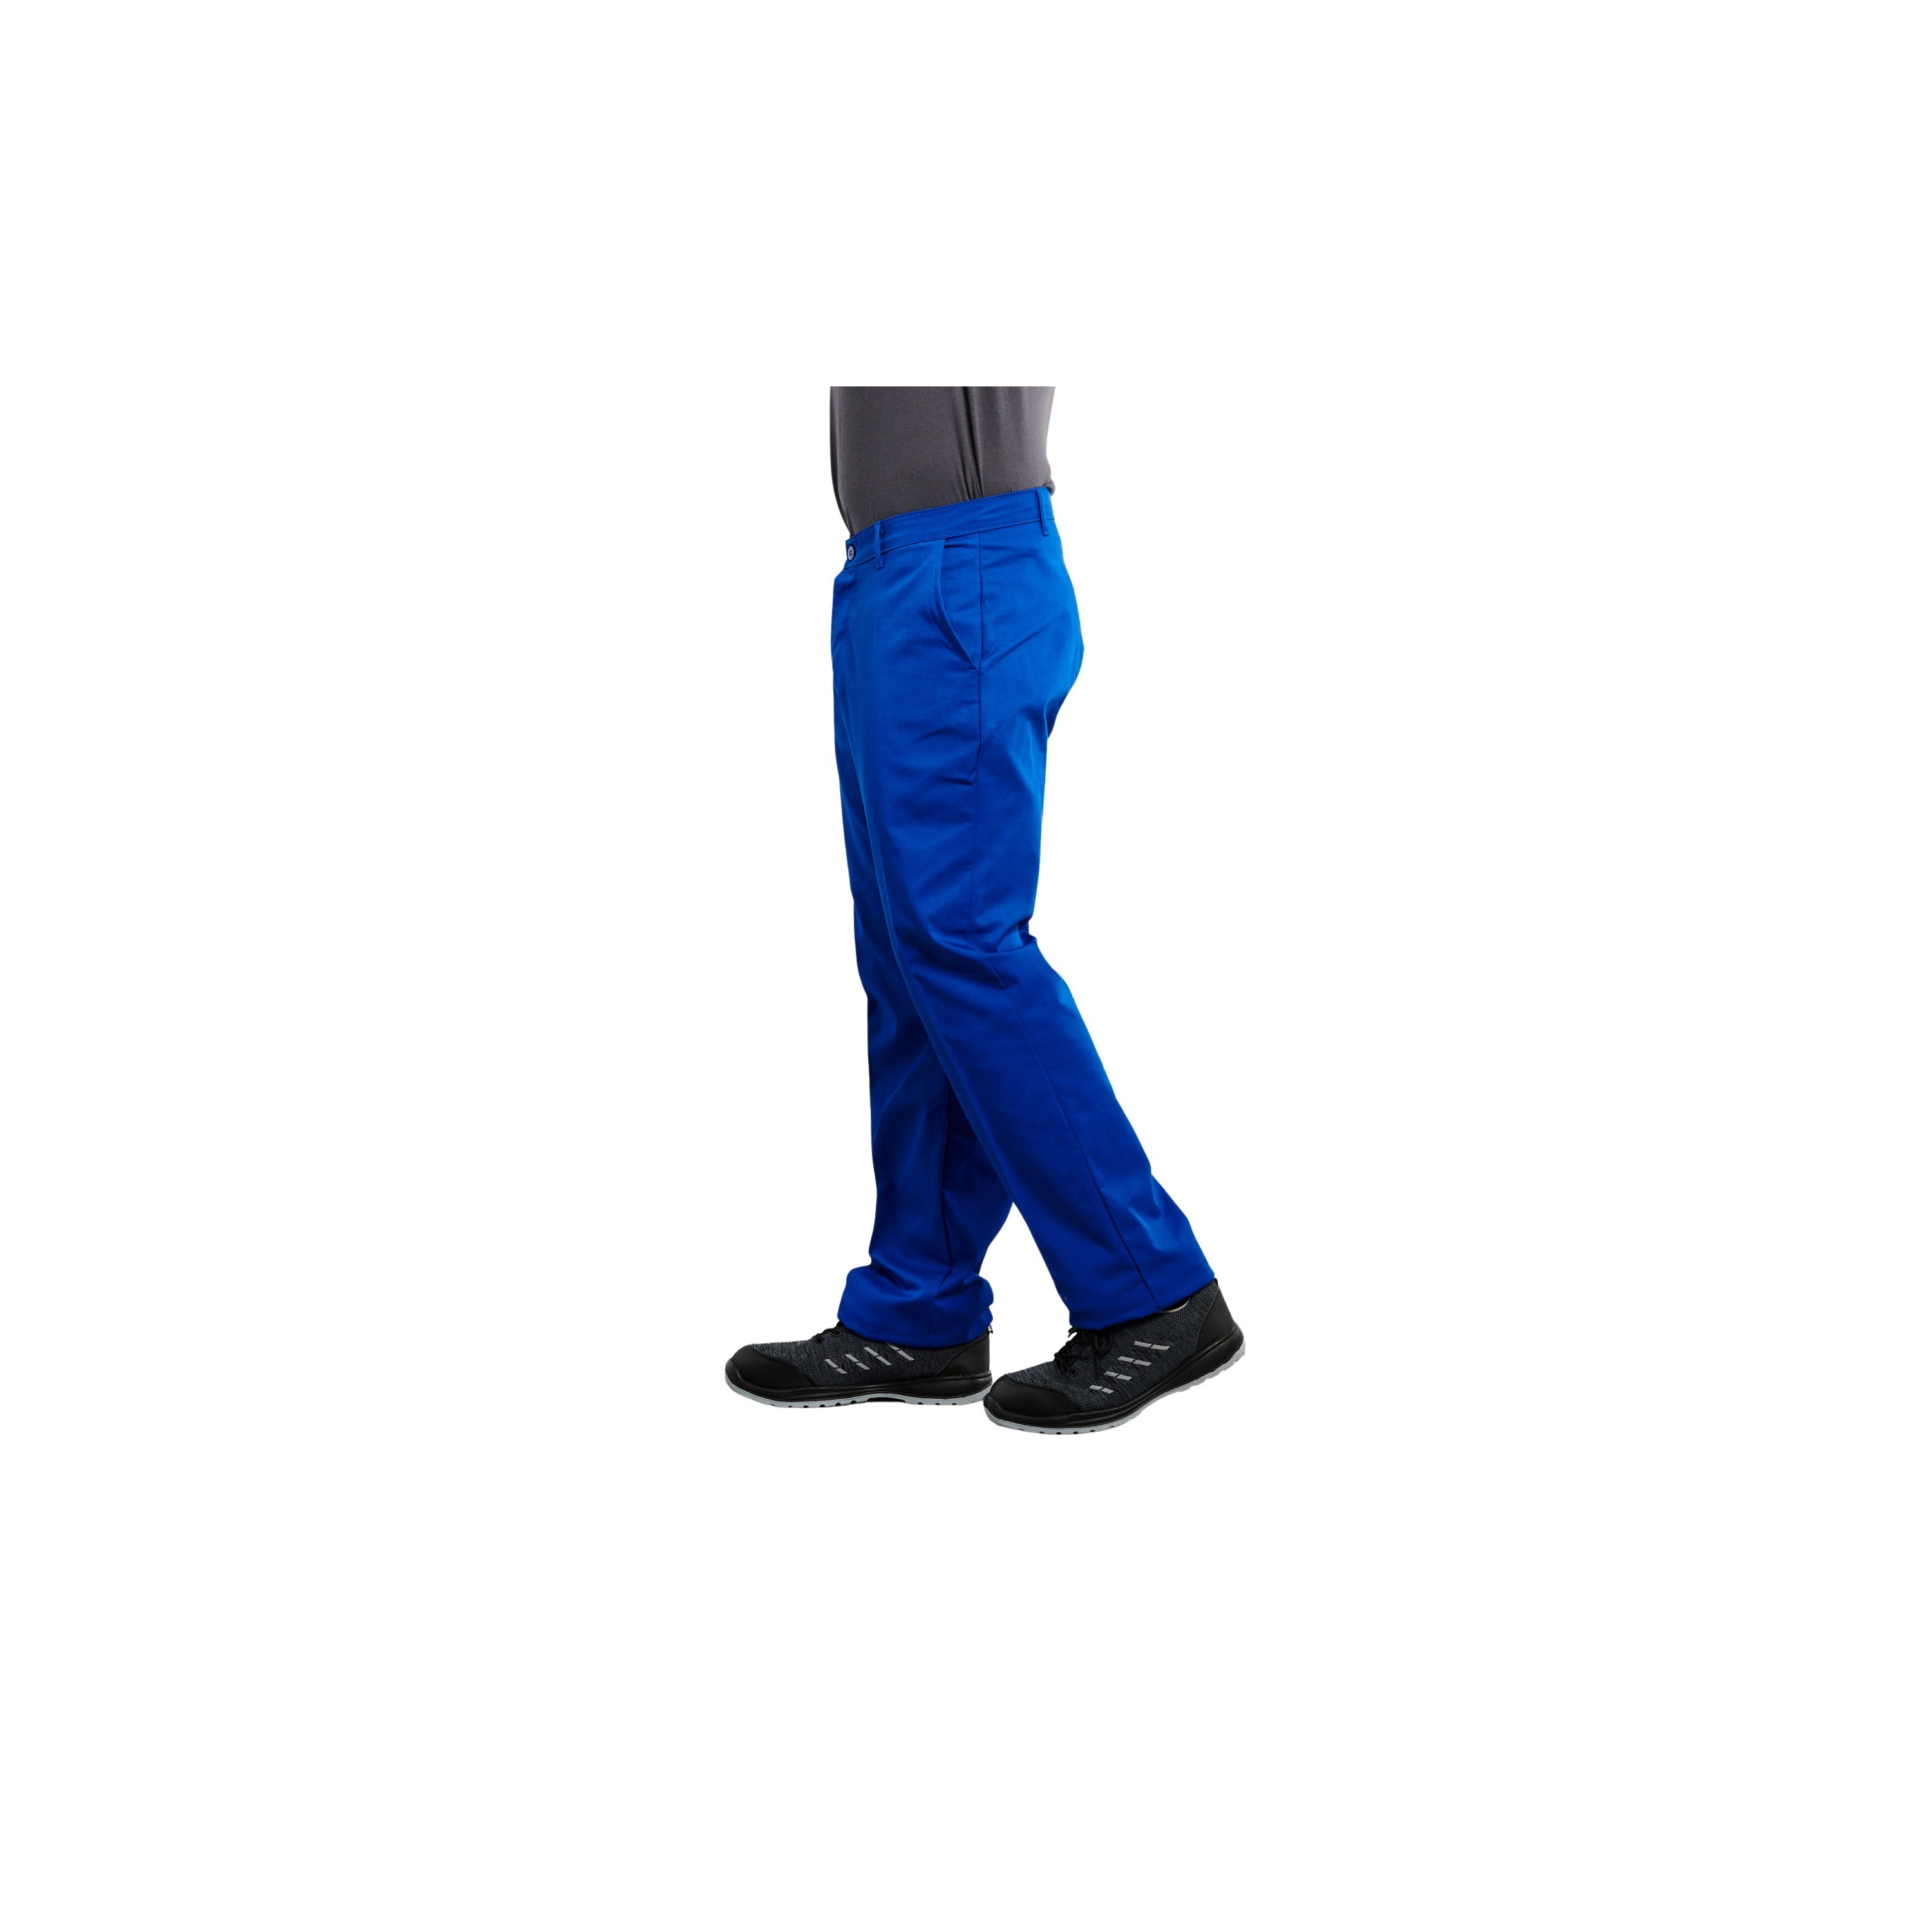 https://static.label-blouse.net/40521-lb_zoom/pantalon-de-travail-bleu-polyestercoton-6535-245-grm-pbv.jpg